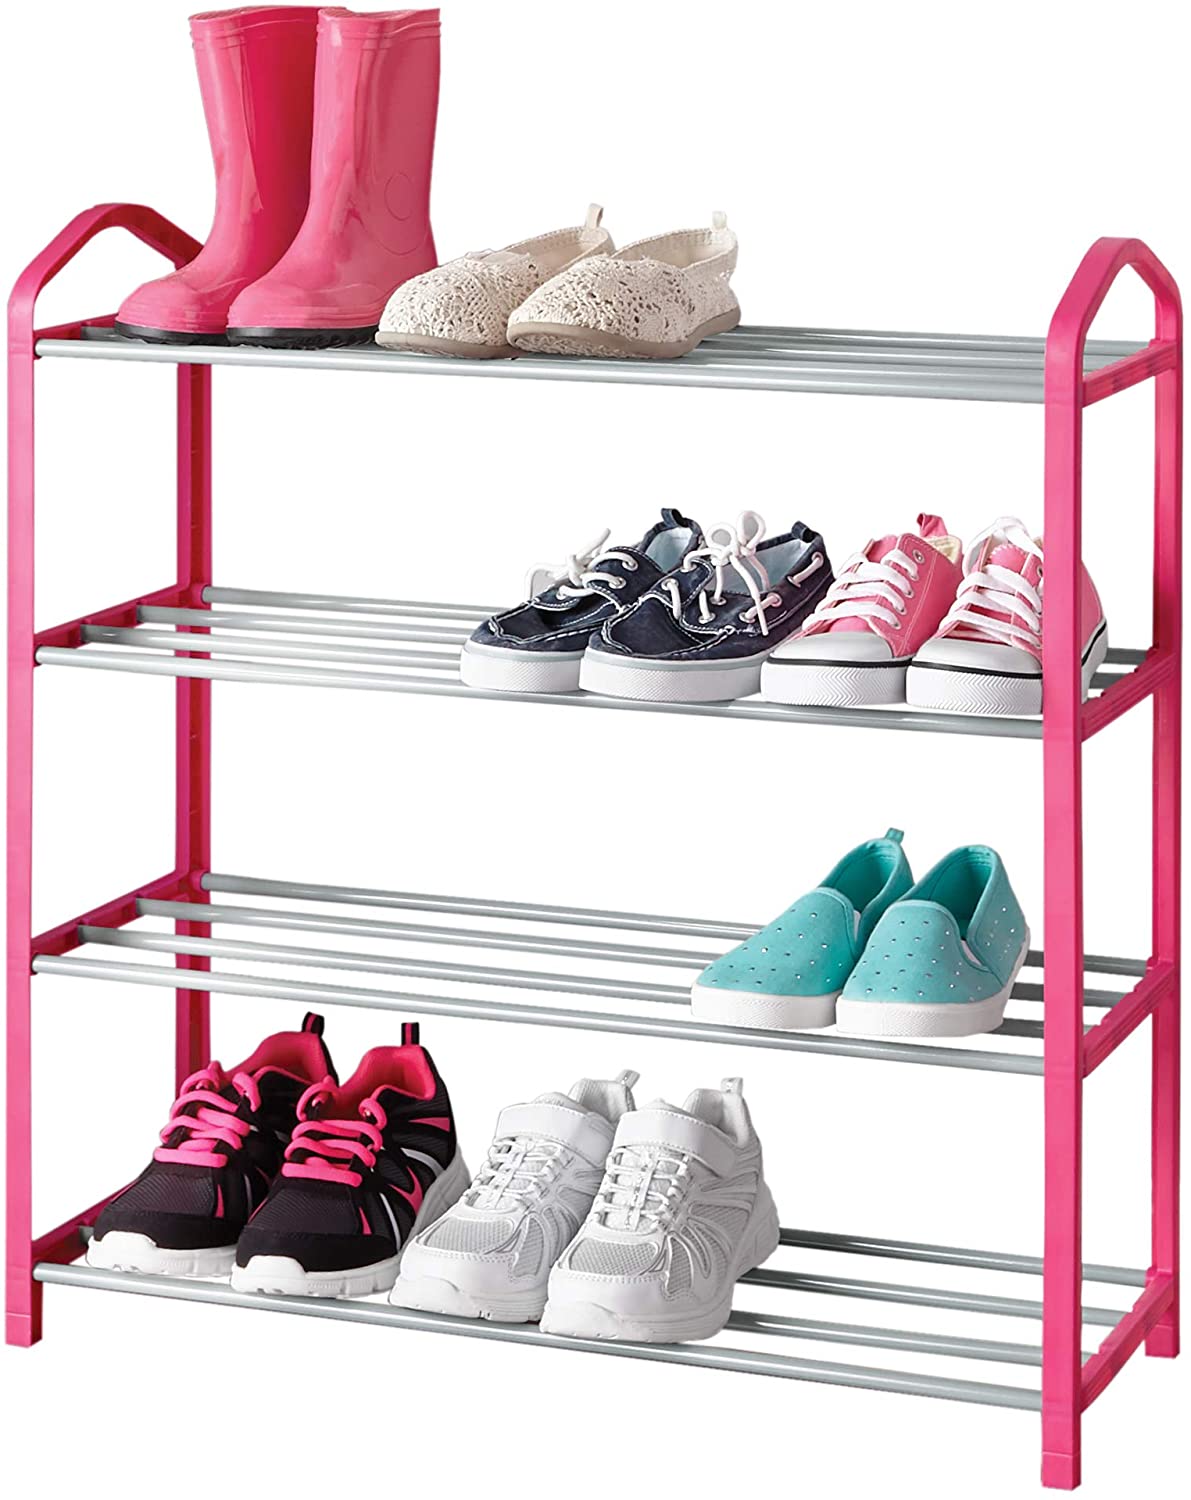 https://www.shopsmartdesign.com/cdn/shop/products/4-tier-steel-shoe-rack-smart-design-storage-5584052-200-incrementing-number-673629.jpg?v=1679346037